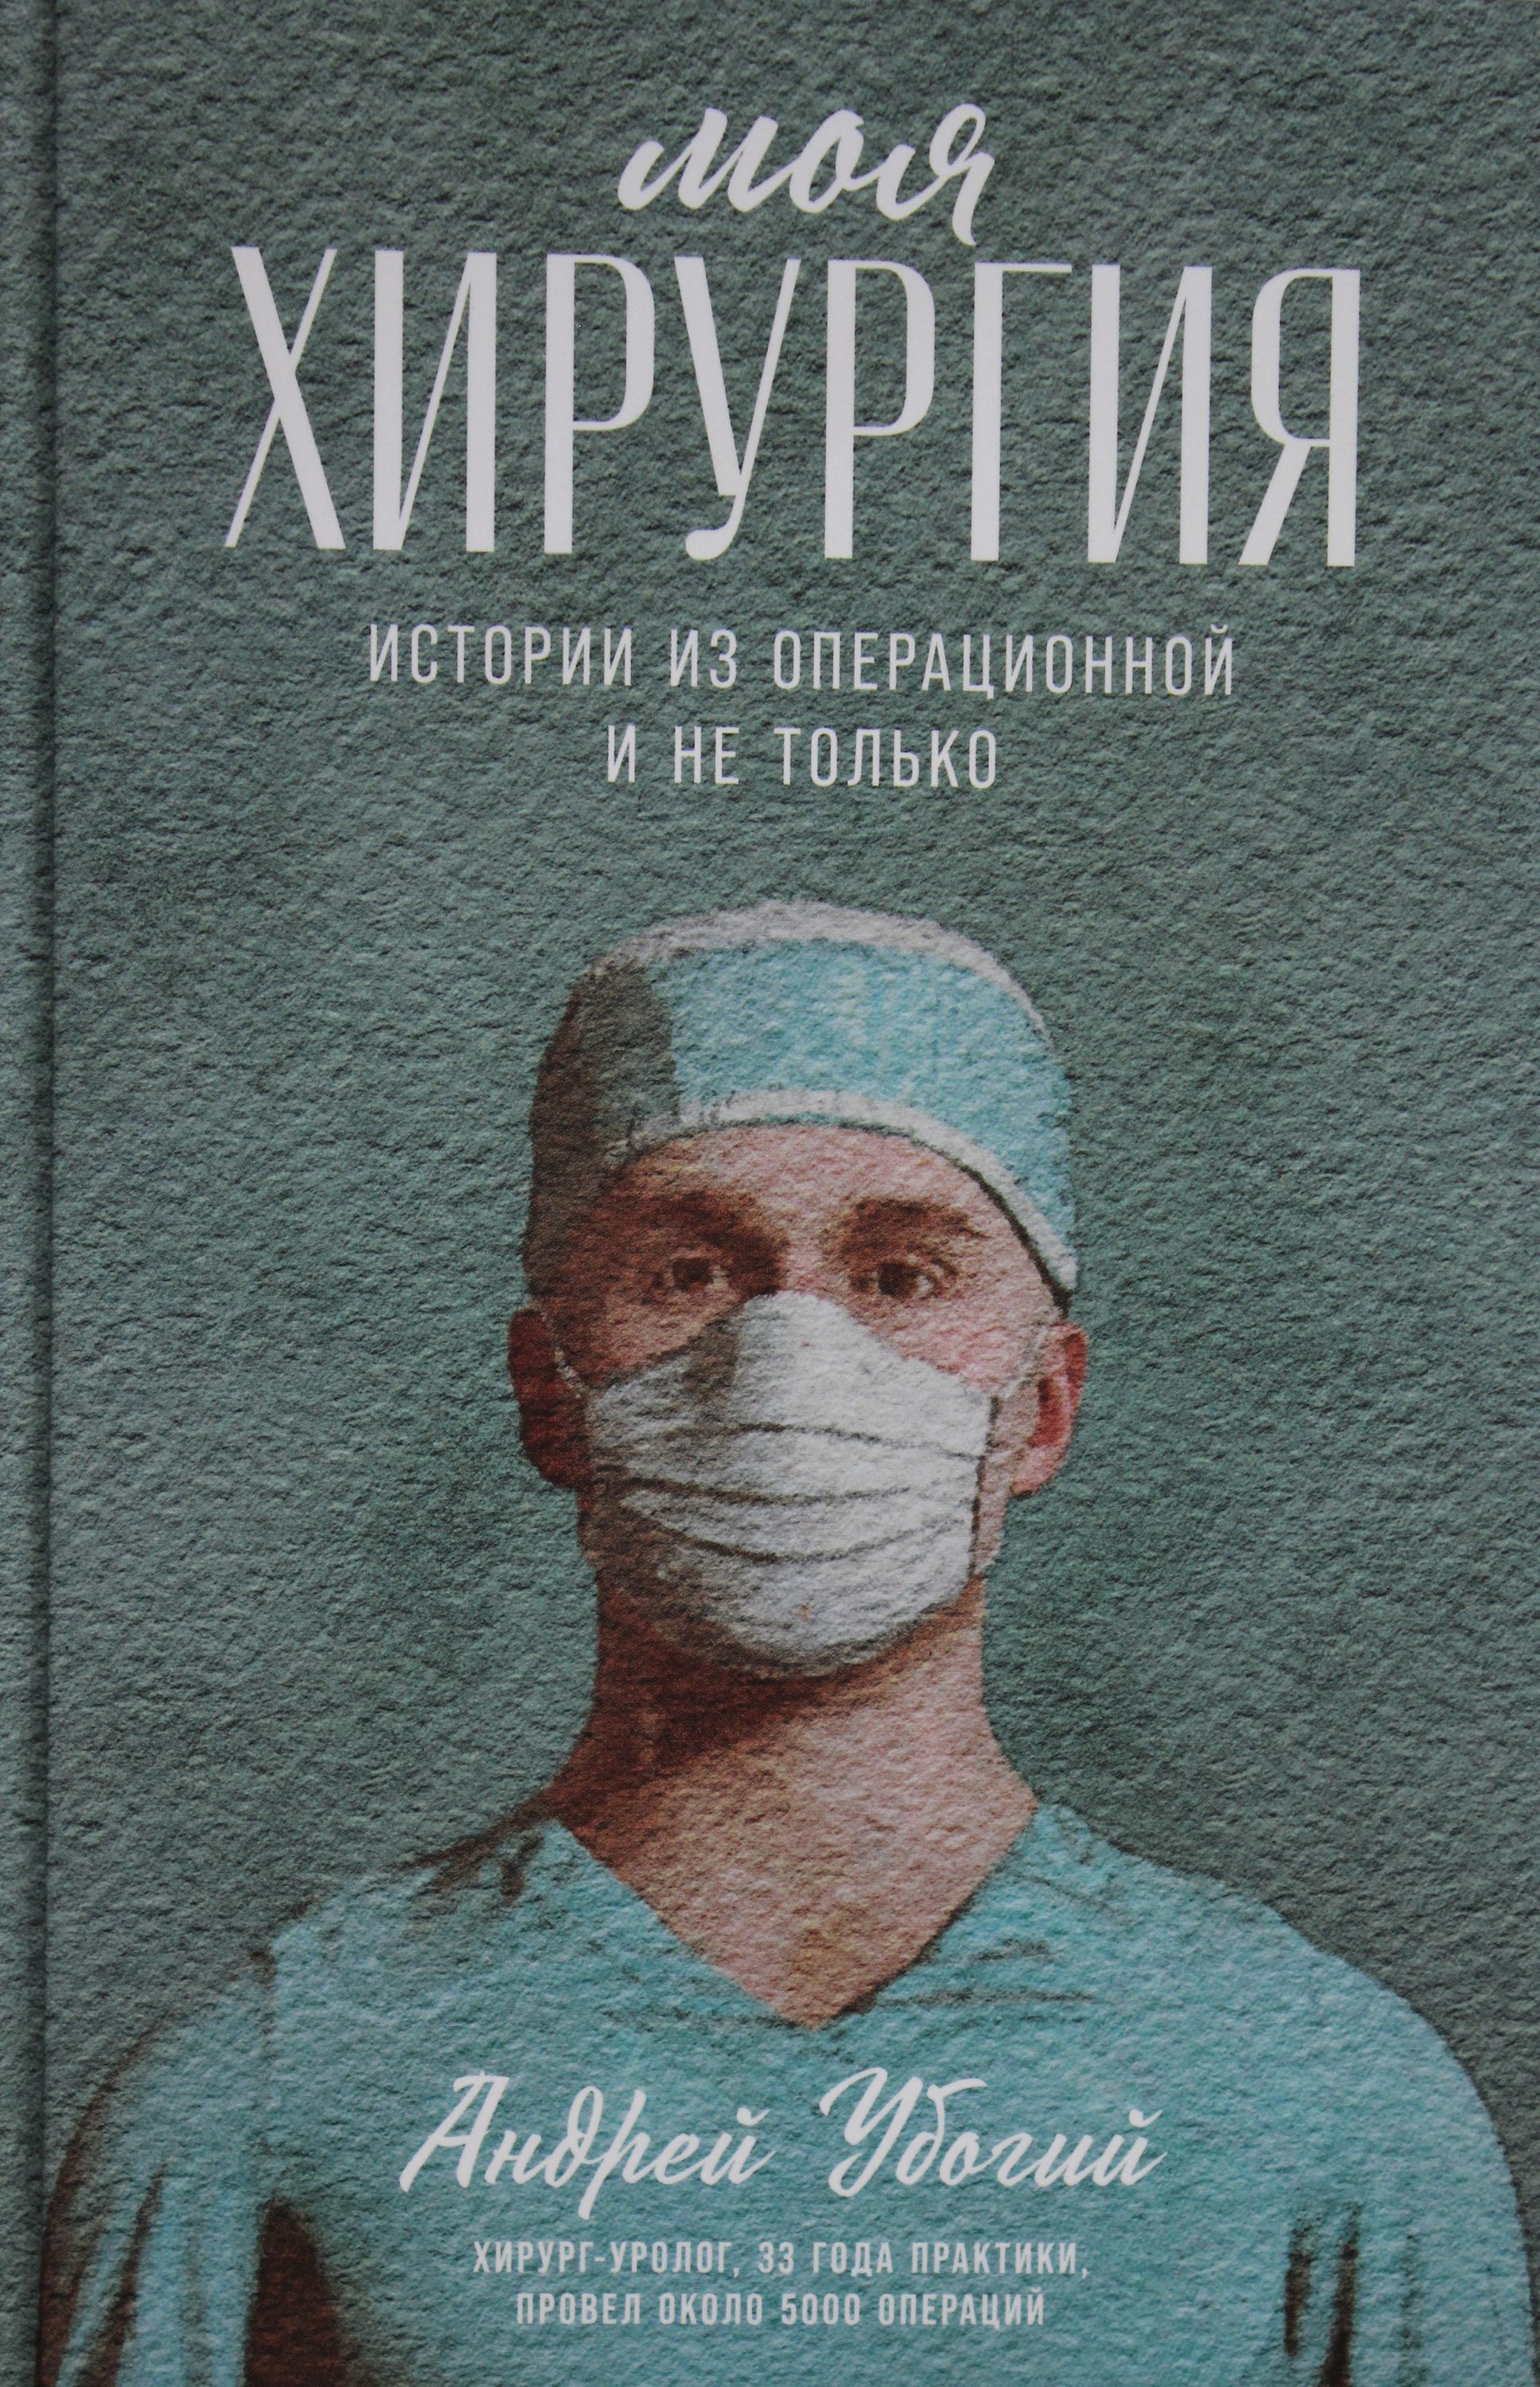 Жалкая книга. Моя хирургия книга. Моя хирургия истории из операционной книга.